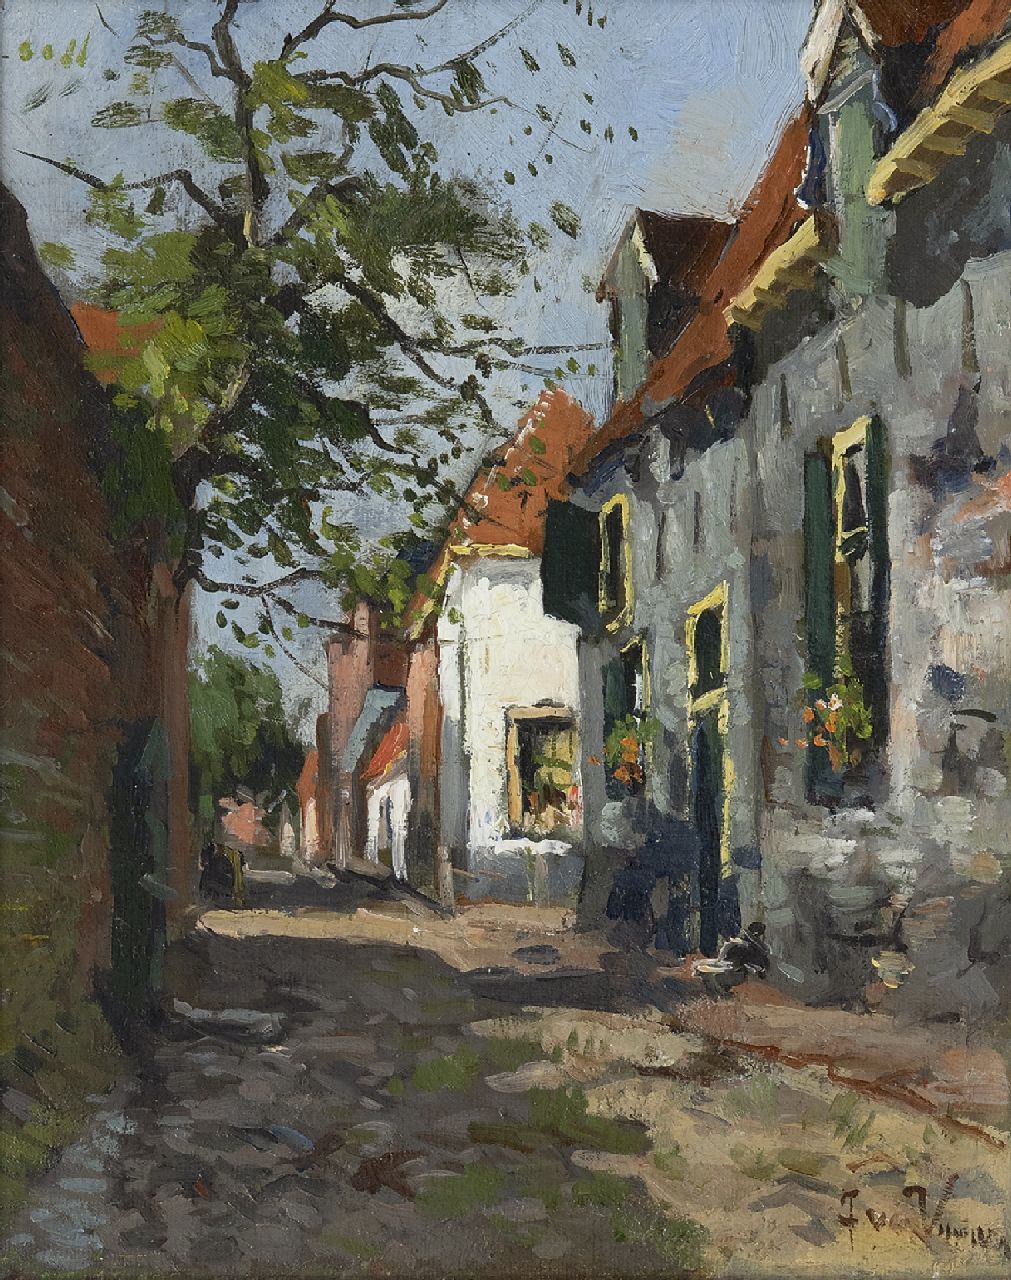 Vuuren J. van | Jan van Vuuren, A sunny street in Elburg, oil on canvas 24.6 x 19.7 cm, signed l.r.